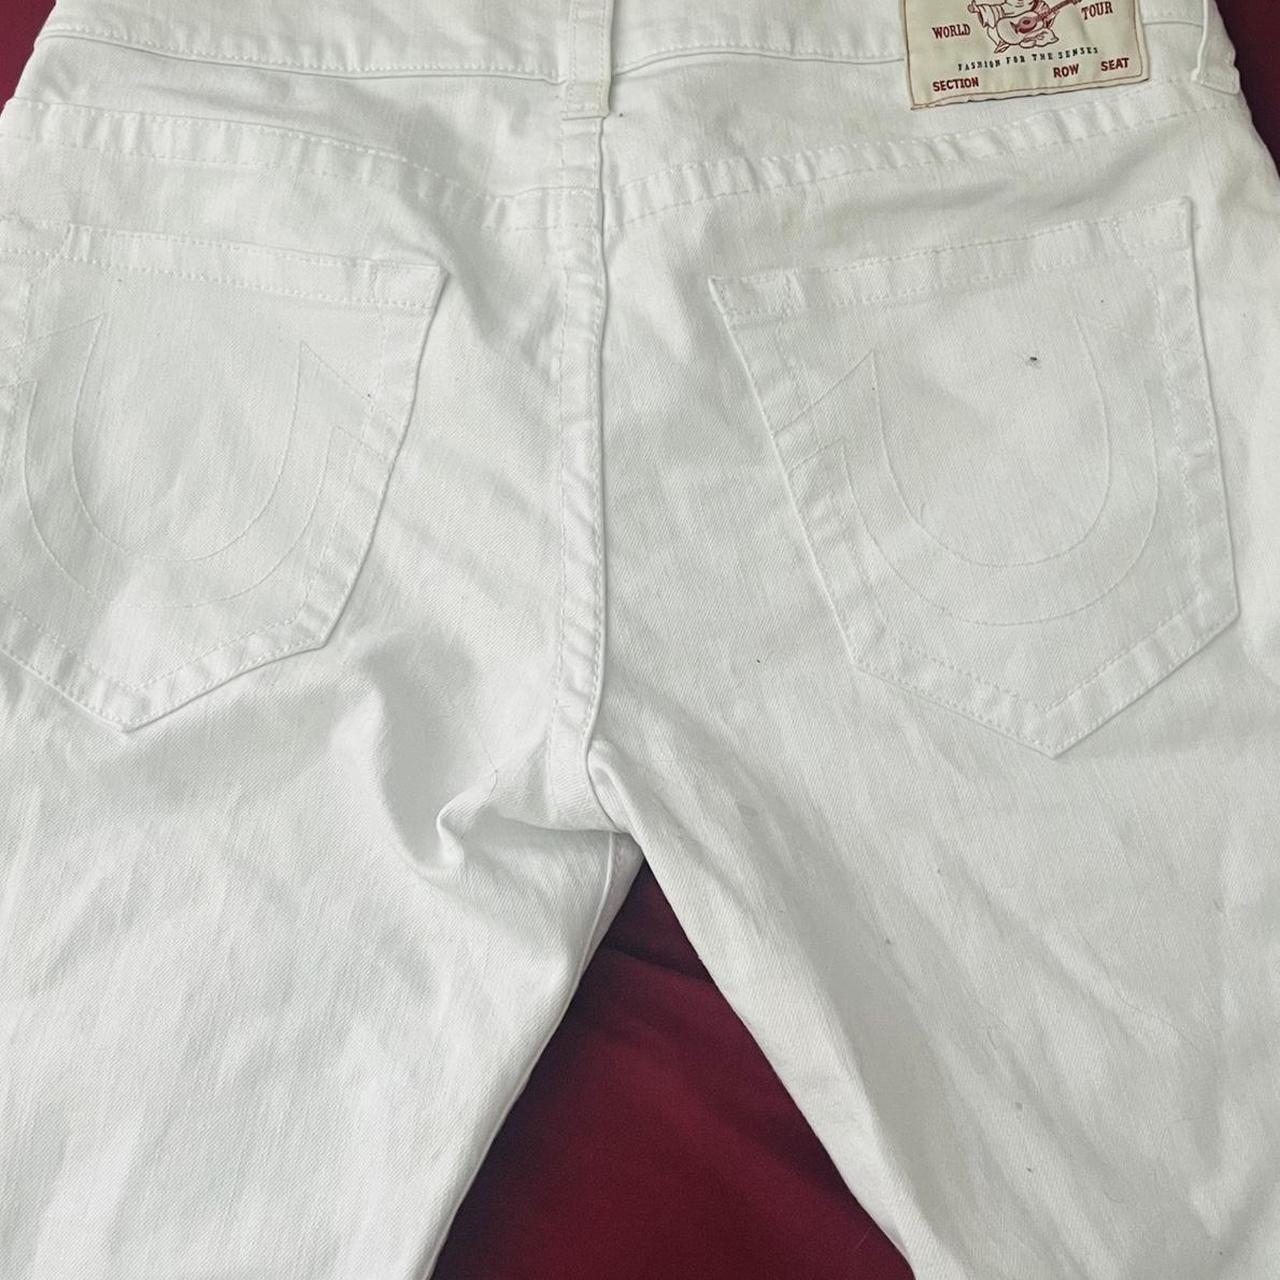 True religion white jeans, minor flaws as seen in... - Depop